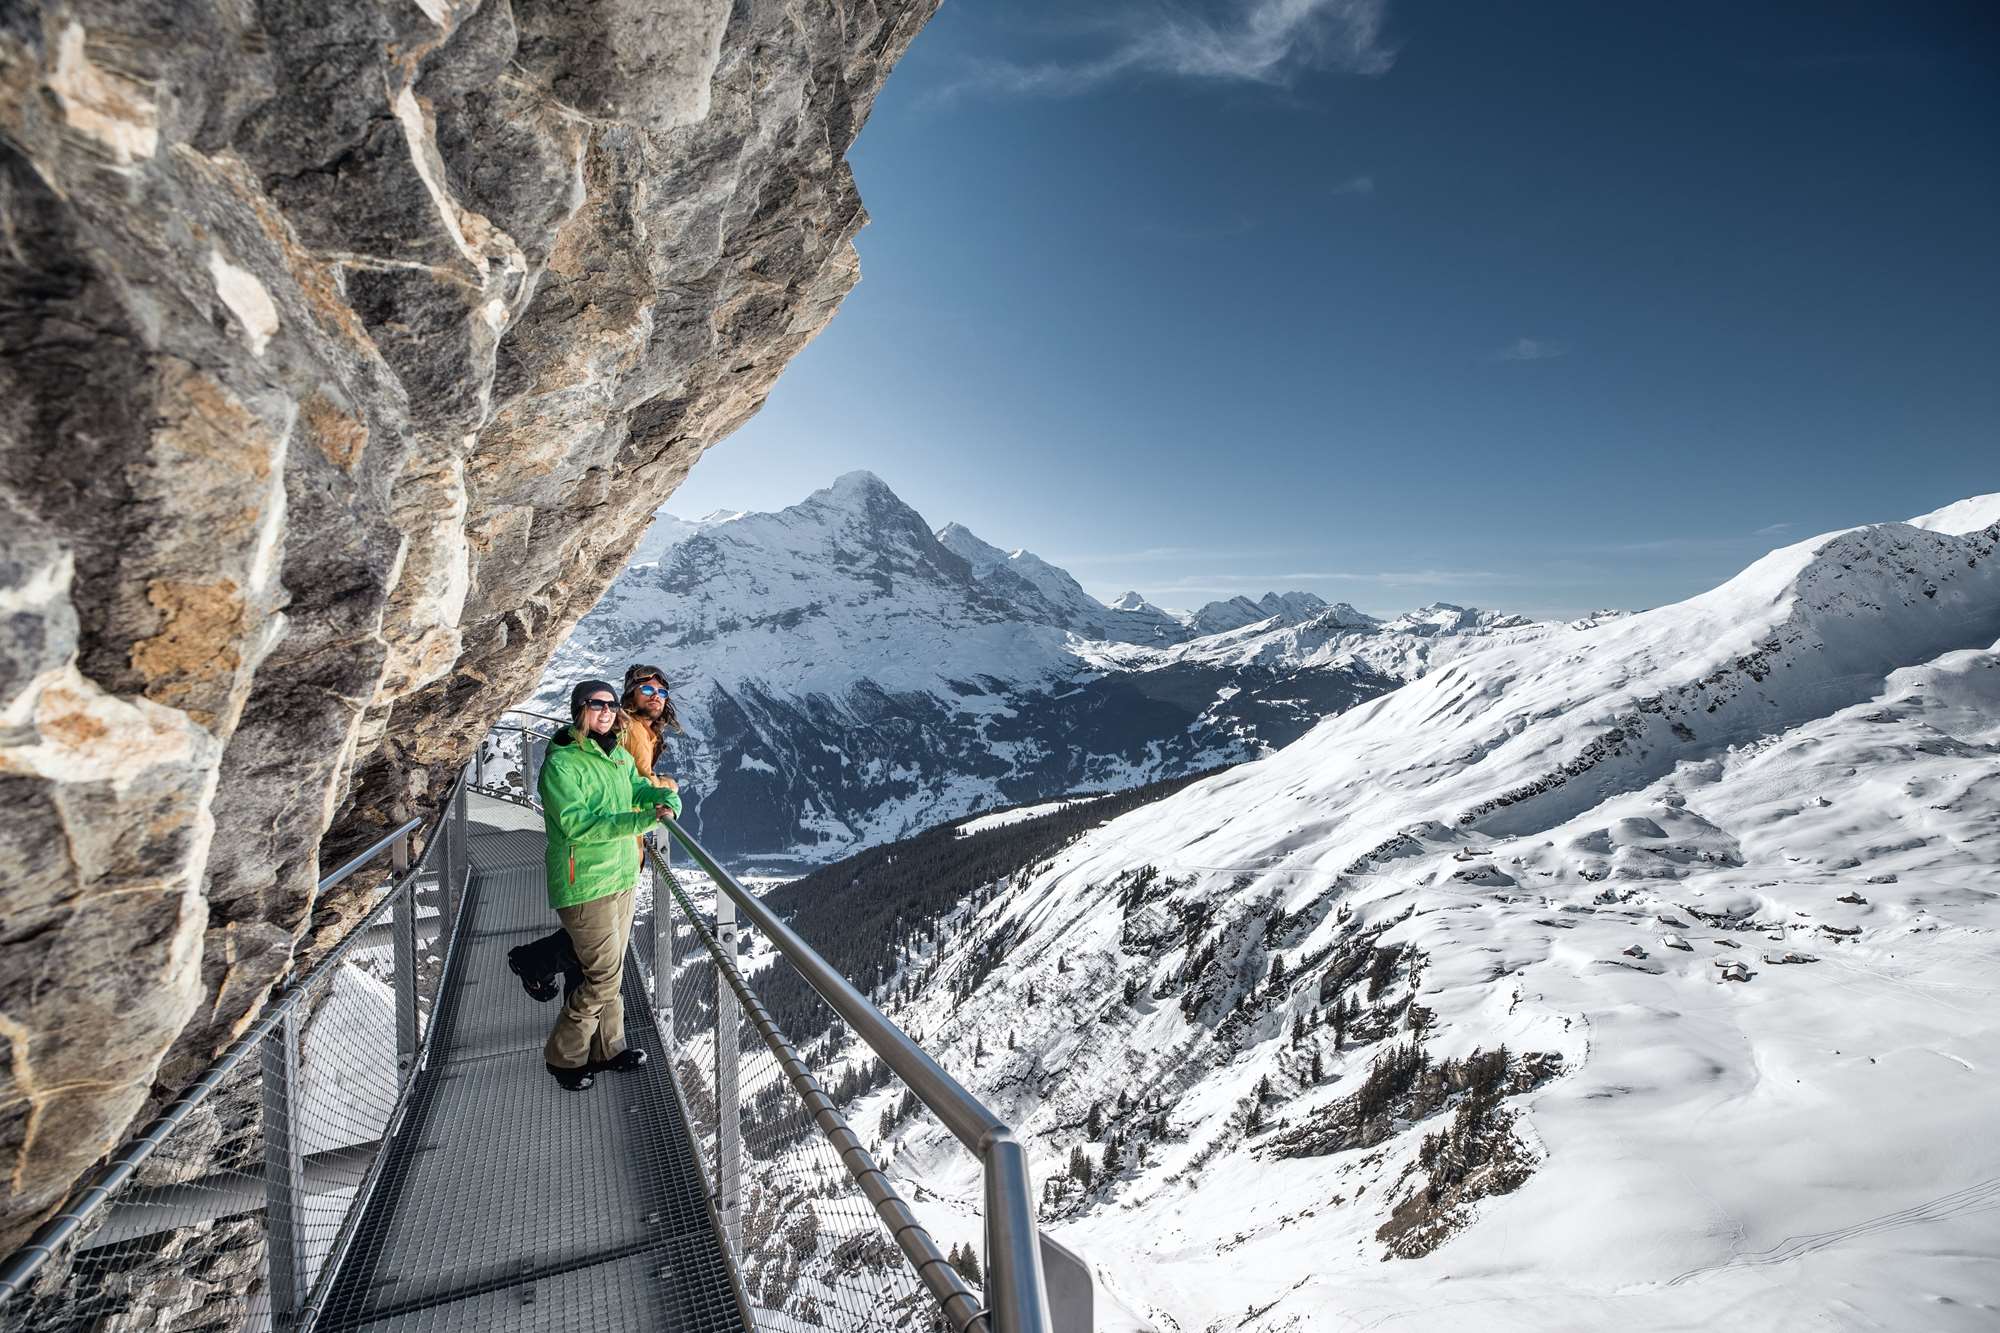 First cliff walk in Grindelwald